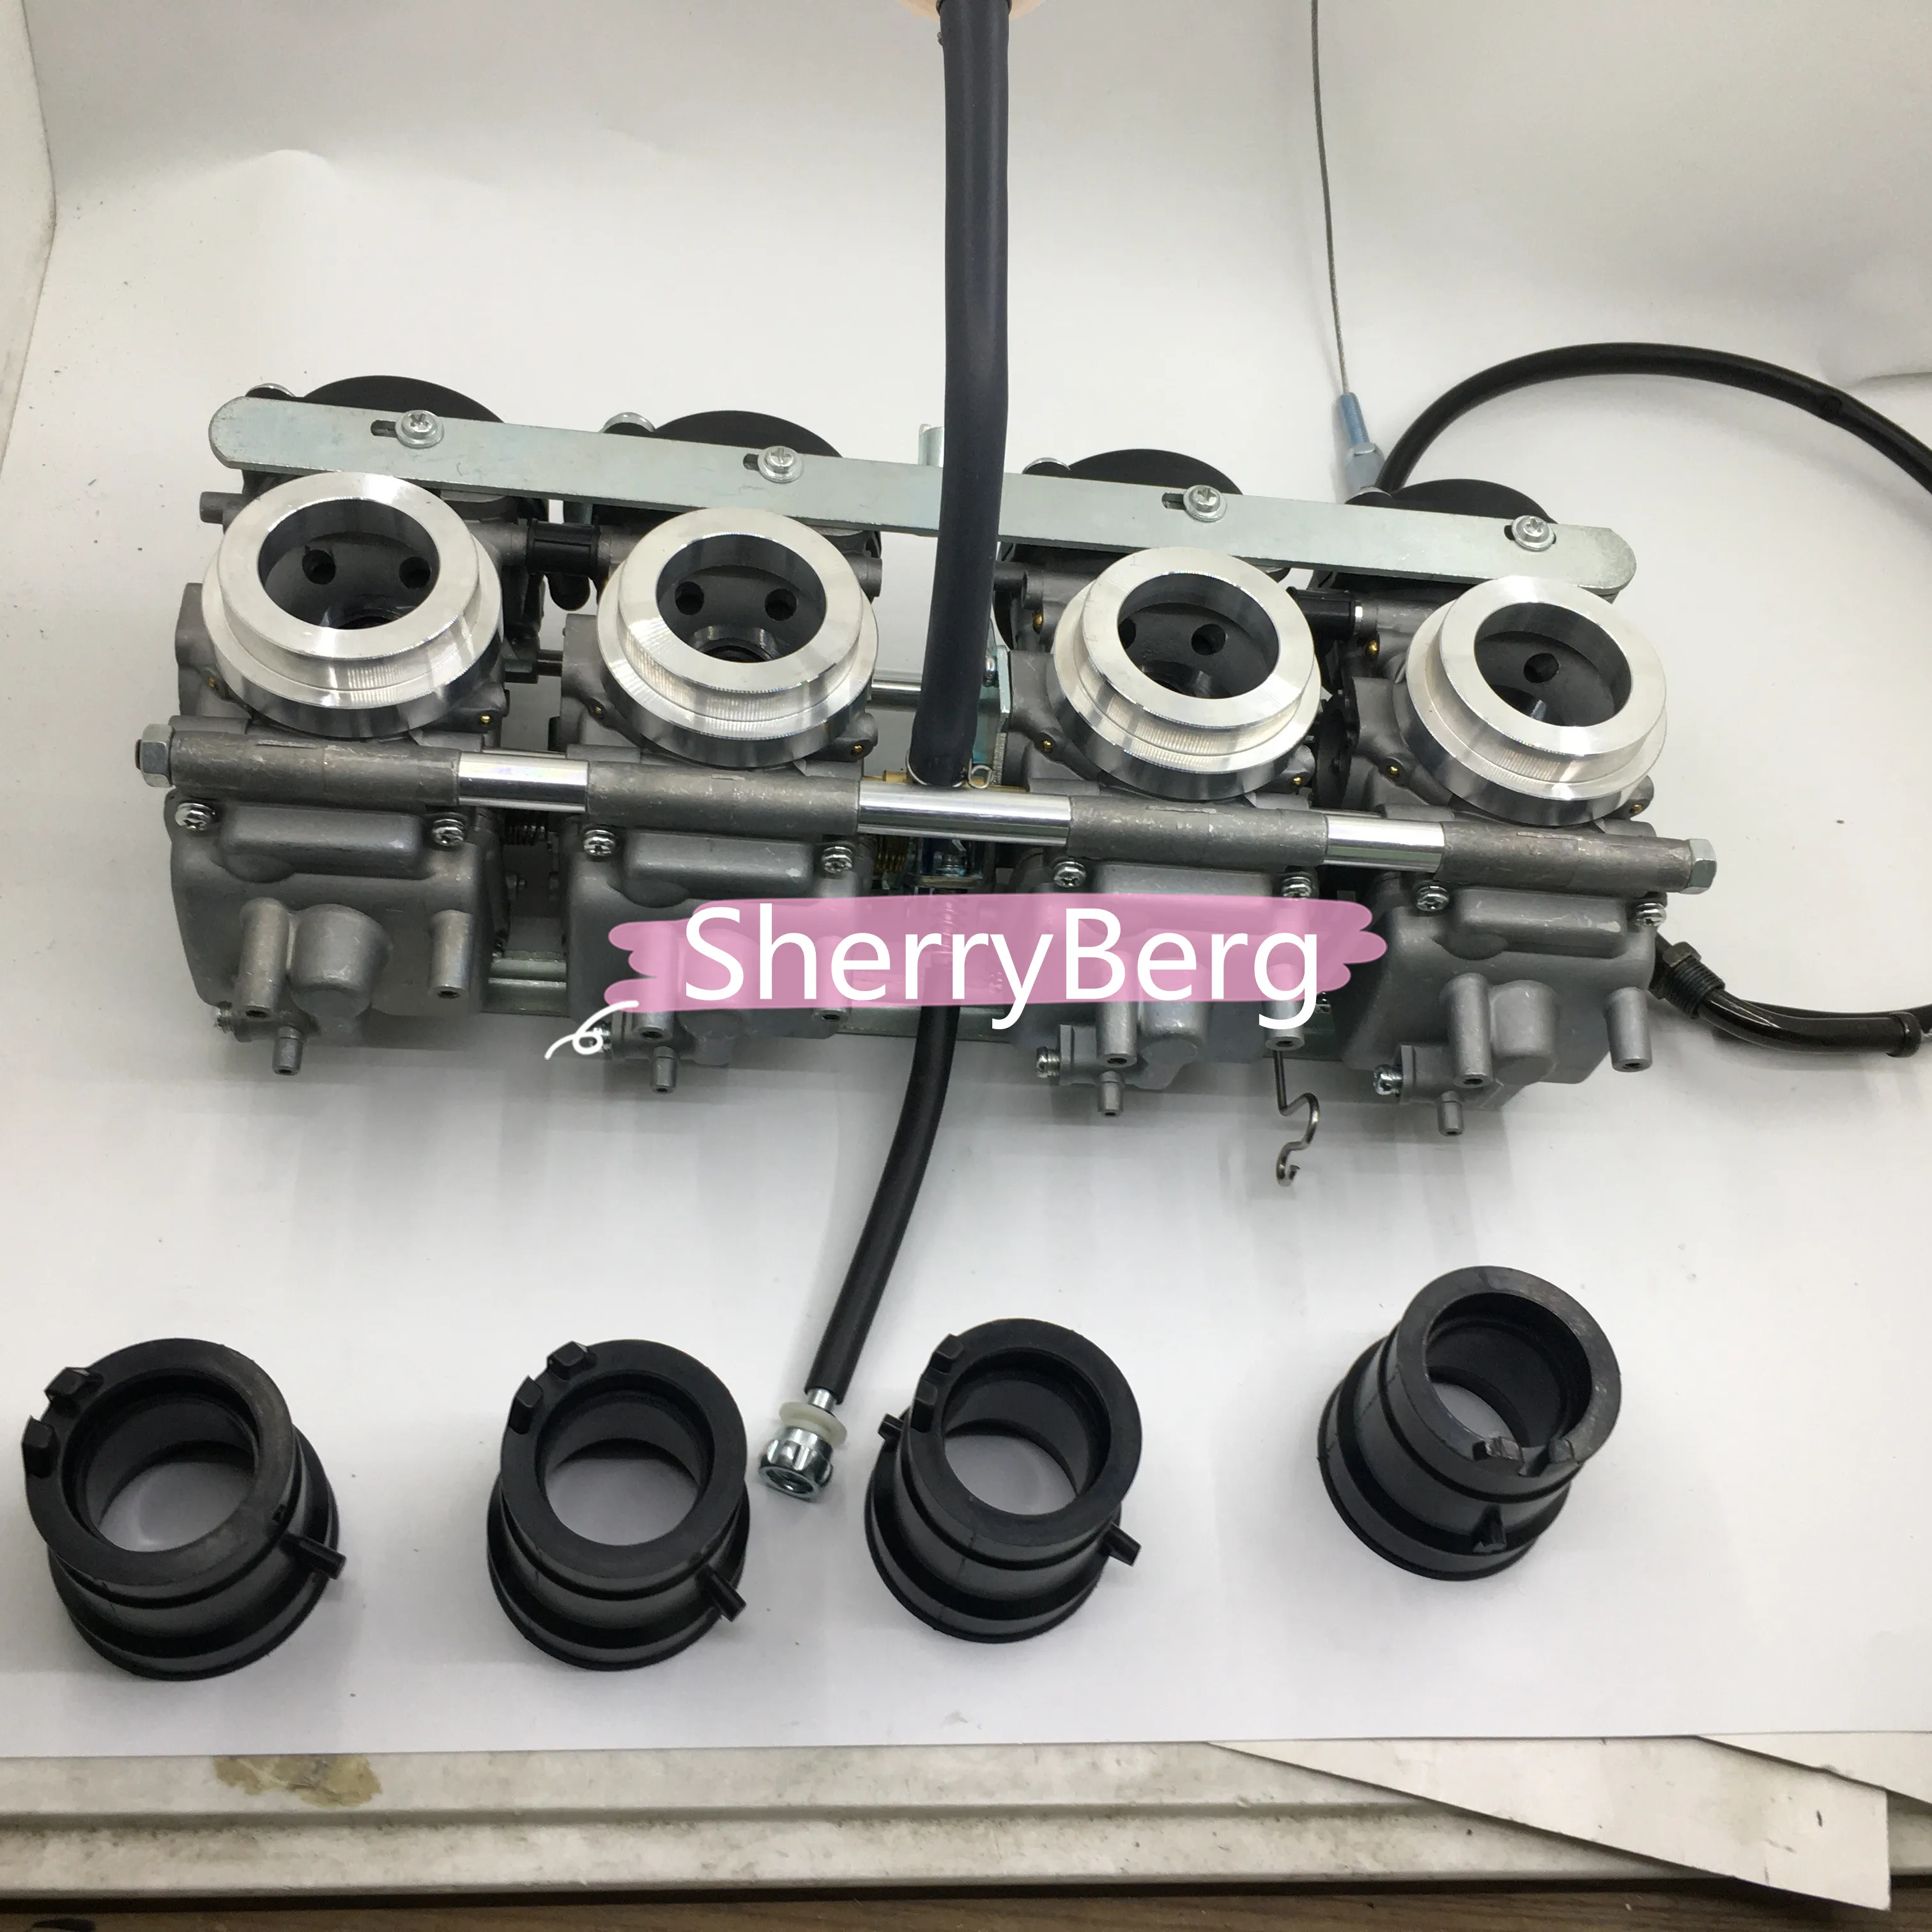 SherryBerg carb carburetor carburettor replace Keihin fit For Honda CB400 1992 1993 CB400SF 1994-1998 CB400 VT 1999 2000 2001